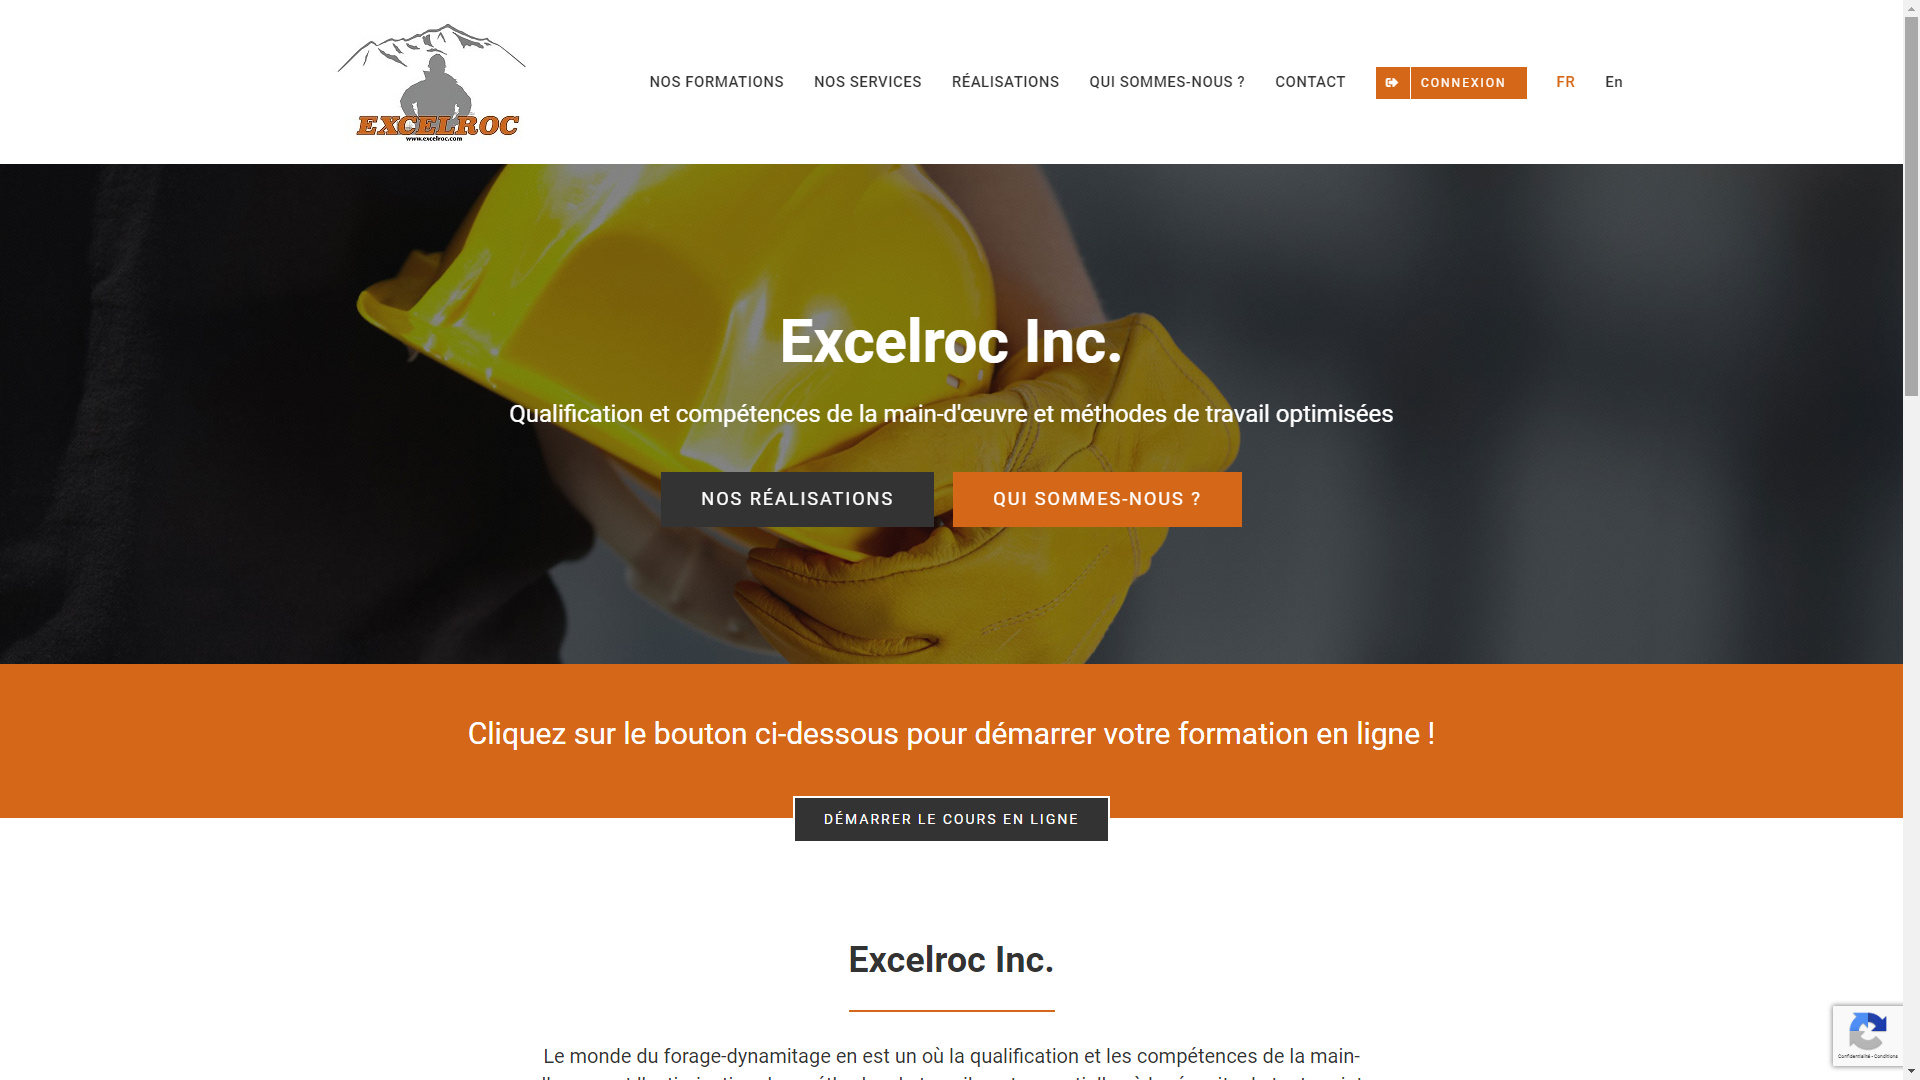 Excelroc Inc.